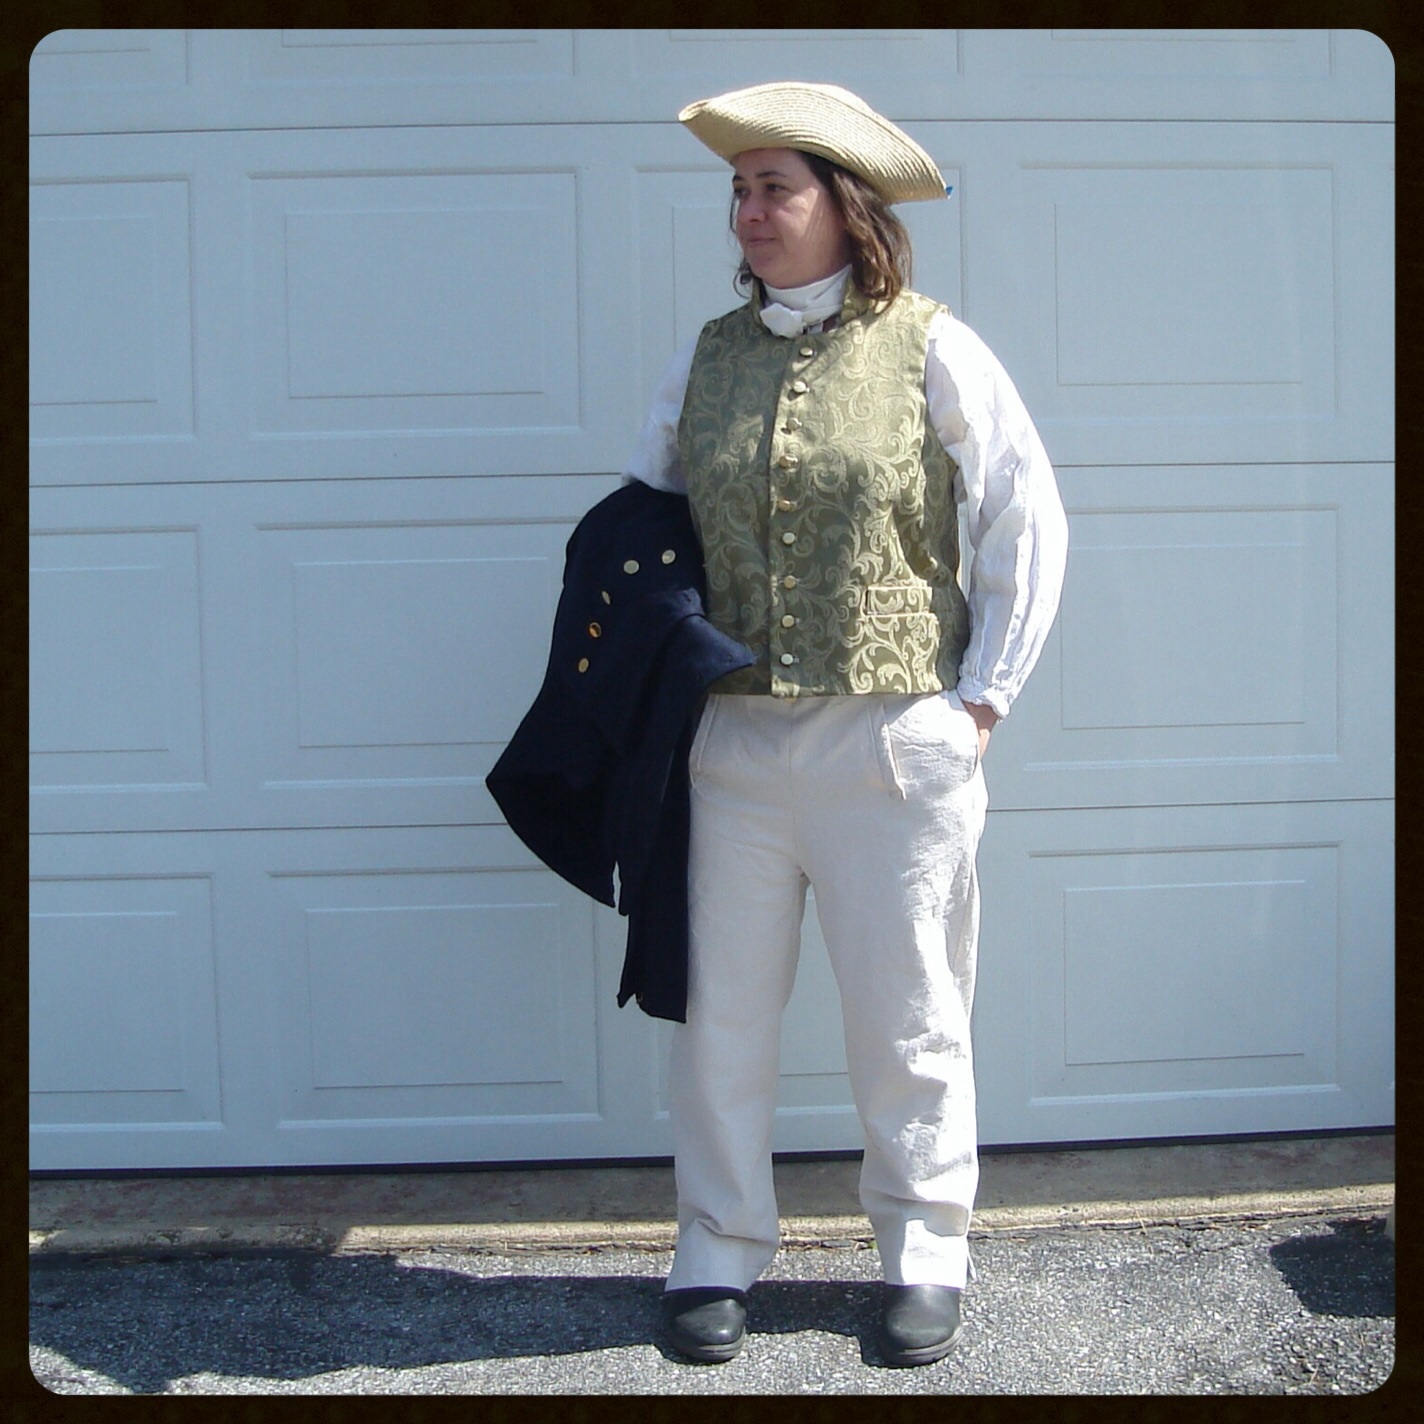 Susan, War of 1812 Era Waistcoat, Linen Shirt and Canvas Trousers